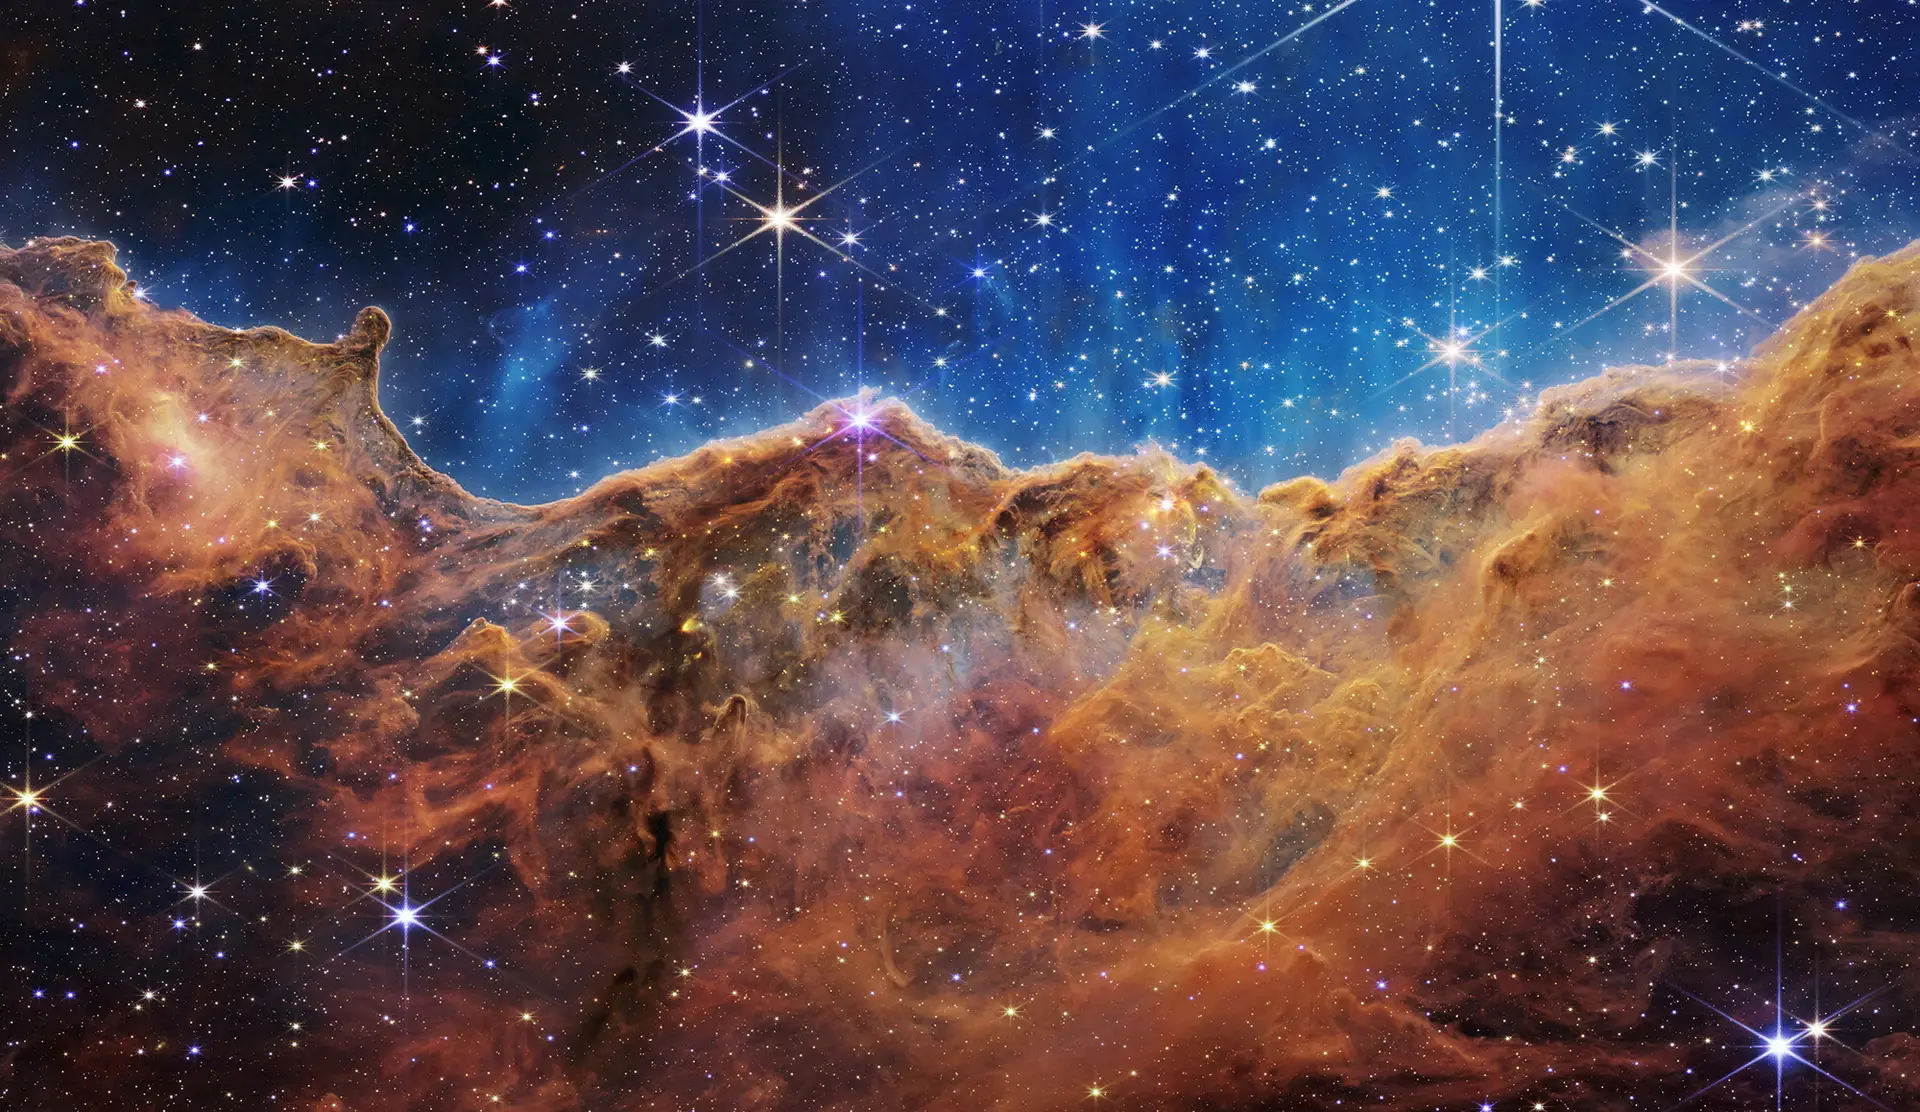 ESPAÇO. Os mistérios do universo primordial, captados pelo telescópio James Webb, ao estilo de uma pintura